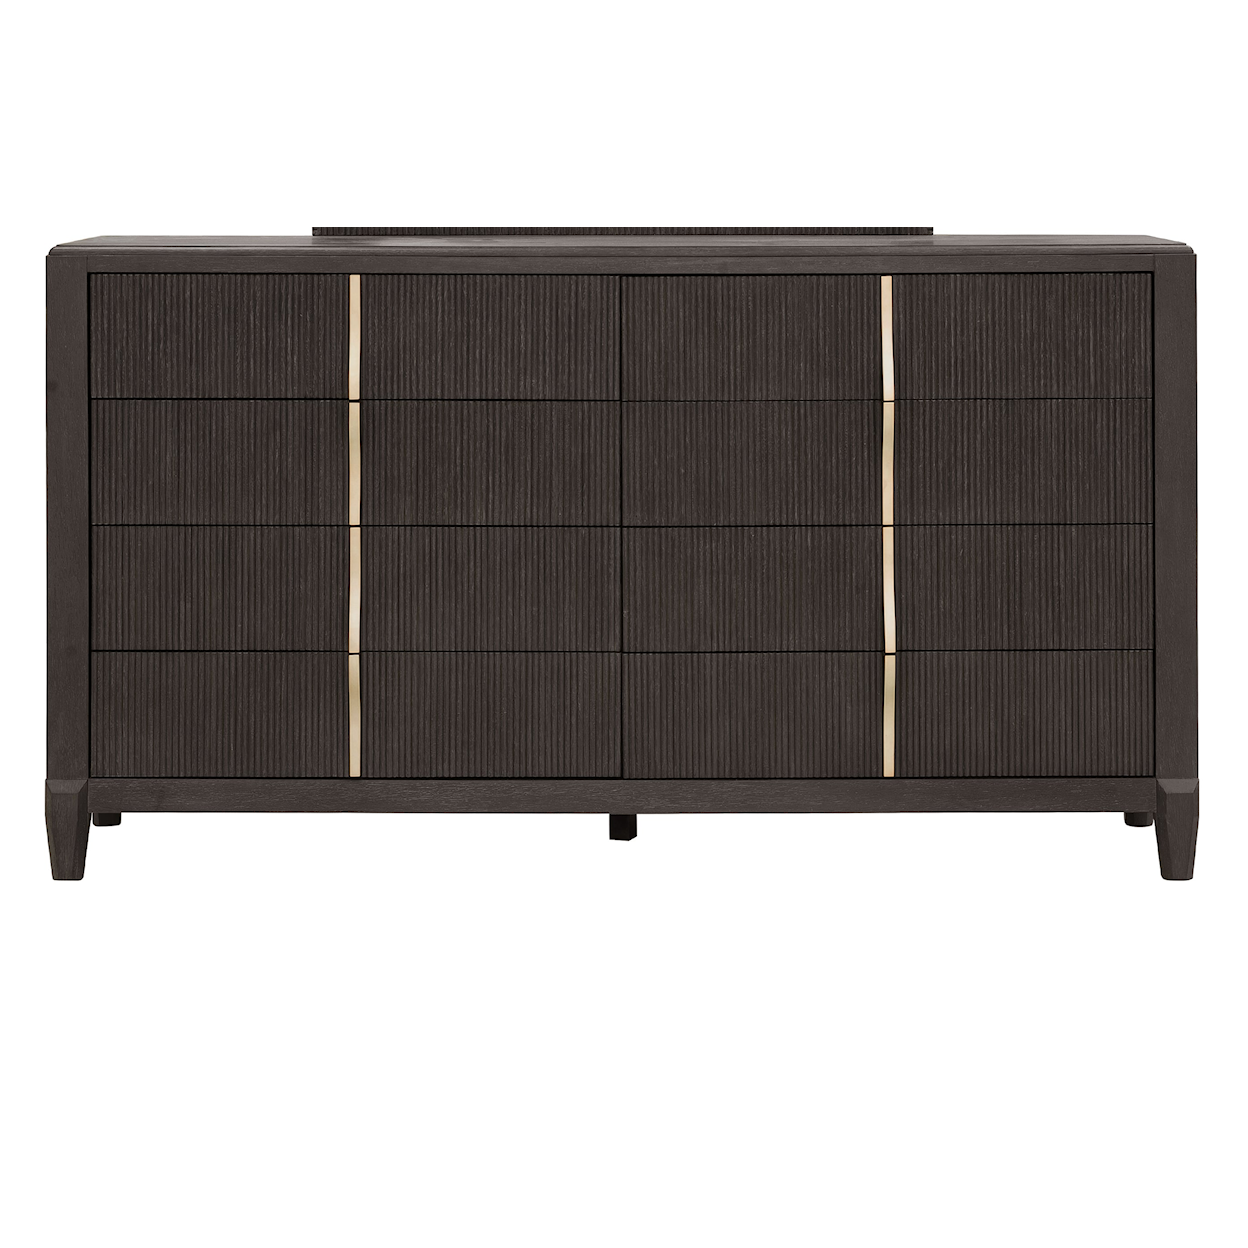 Pulaski Furniture West End Loft 8-Drawer Dresser